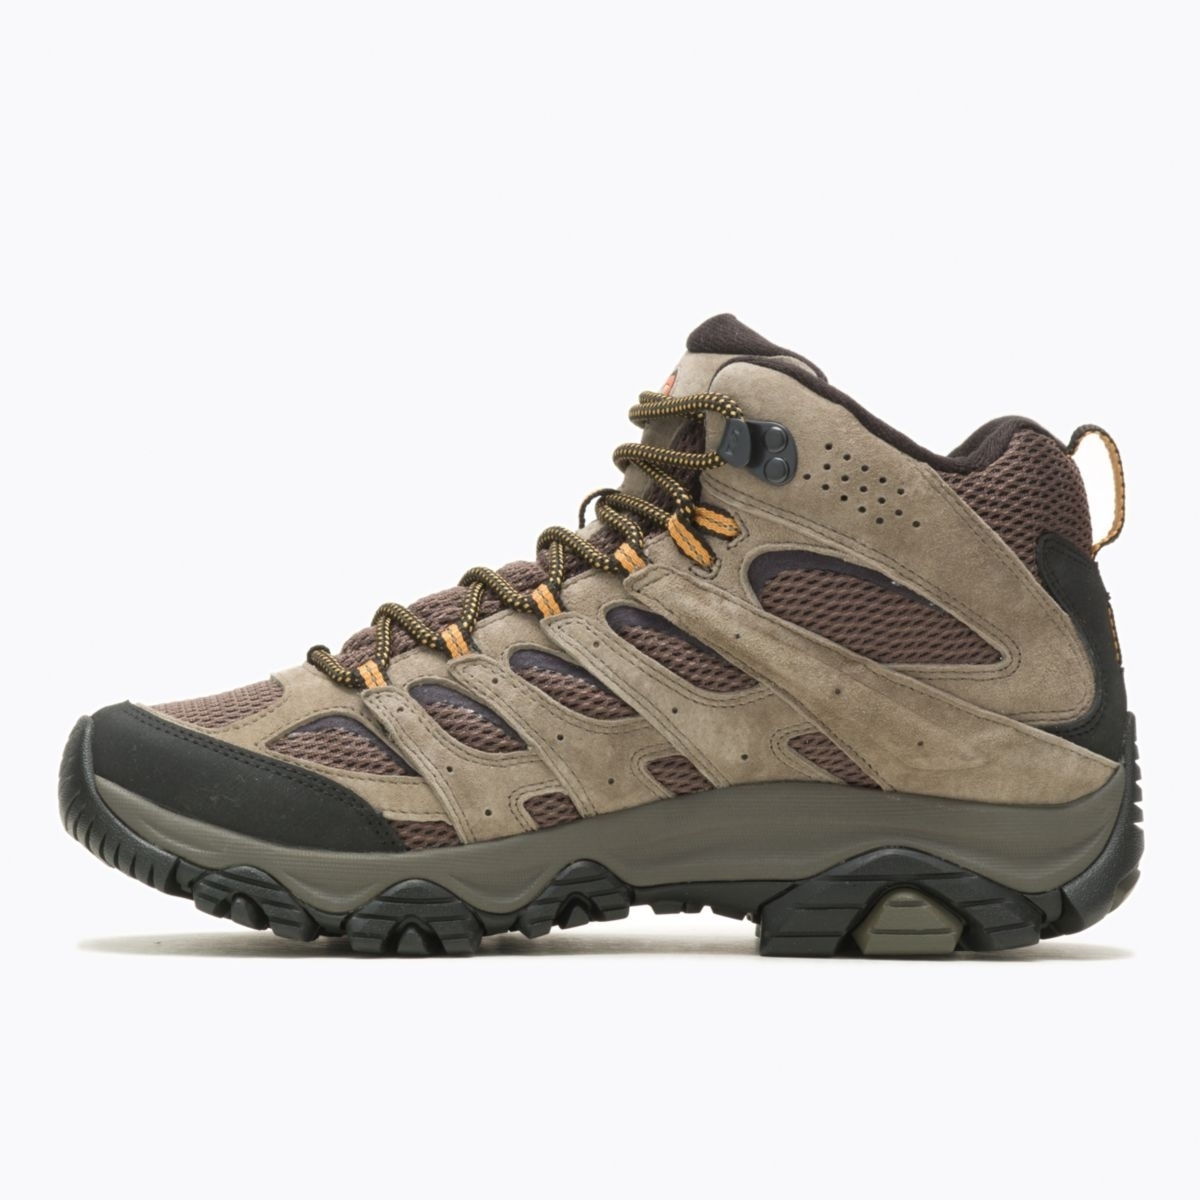 Merrell Men's Moab 3 Mid GORE-TEX Hiking Boot Walnut - J035795 WALNUT - WALNUT, 12